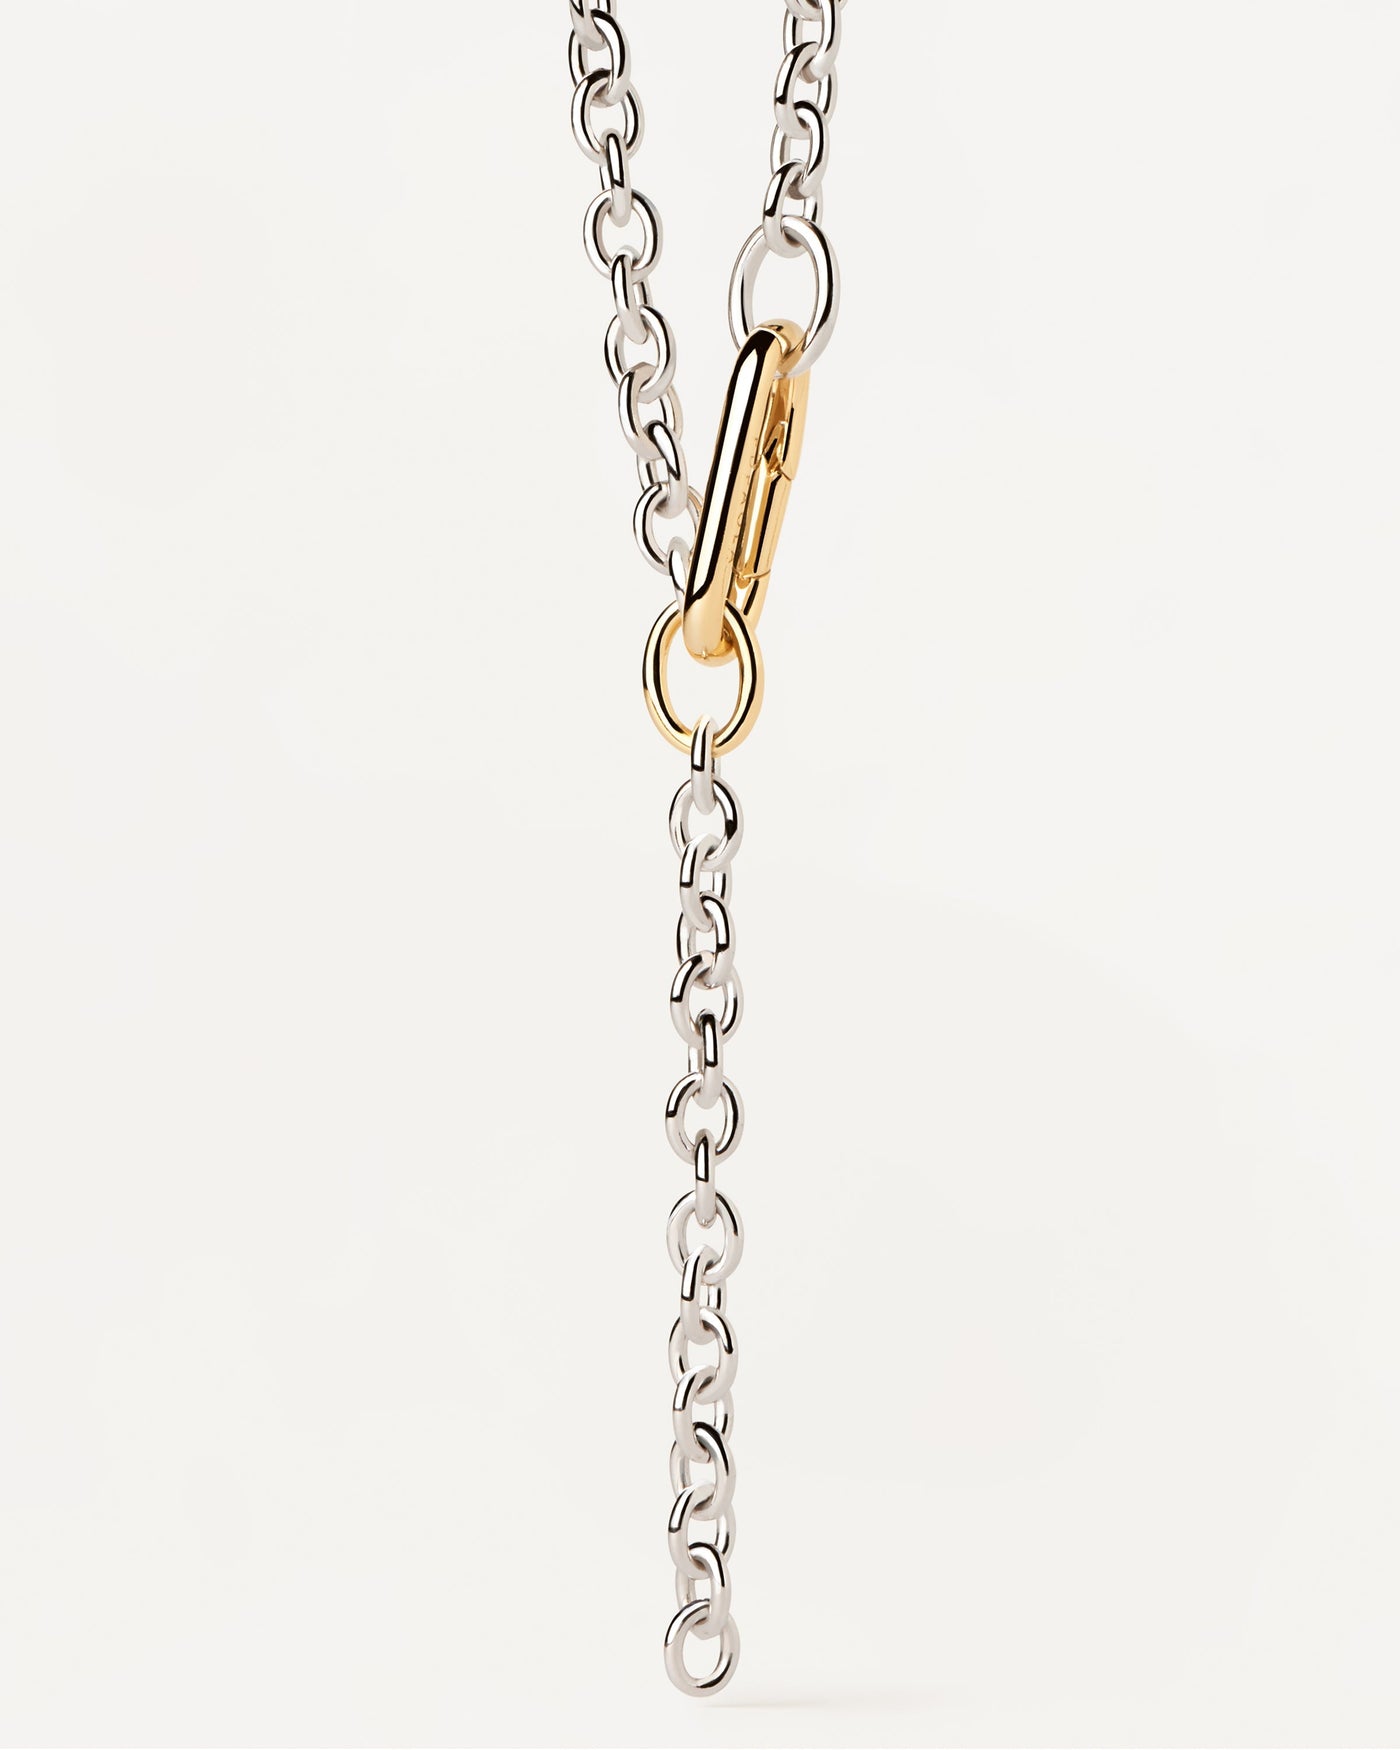 Beat Gliederkette. Bicolor-Y-Halskette mit silbernen Gliedern und auffälligem vergoldetem Verschluss. Erhalten Sie die neuesten Produkte von PDPAOLA. Geben Sie Ihre Bestellung sicher auf und erhalten Sie diesen Bestseller.